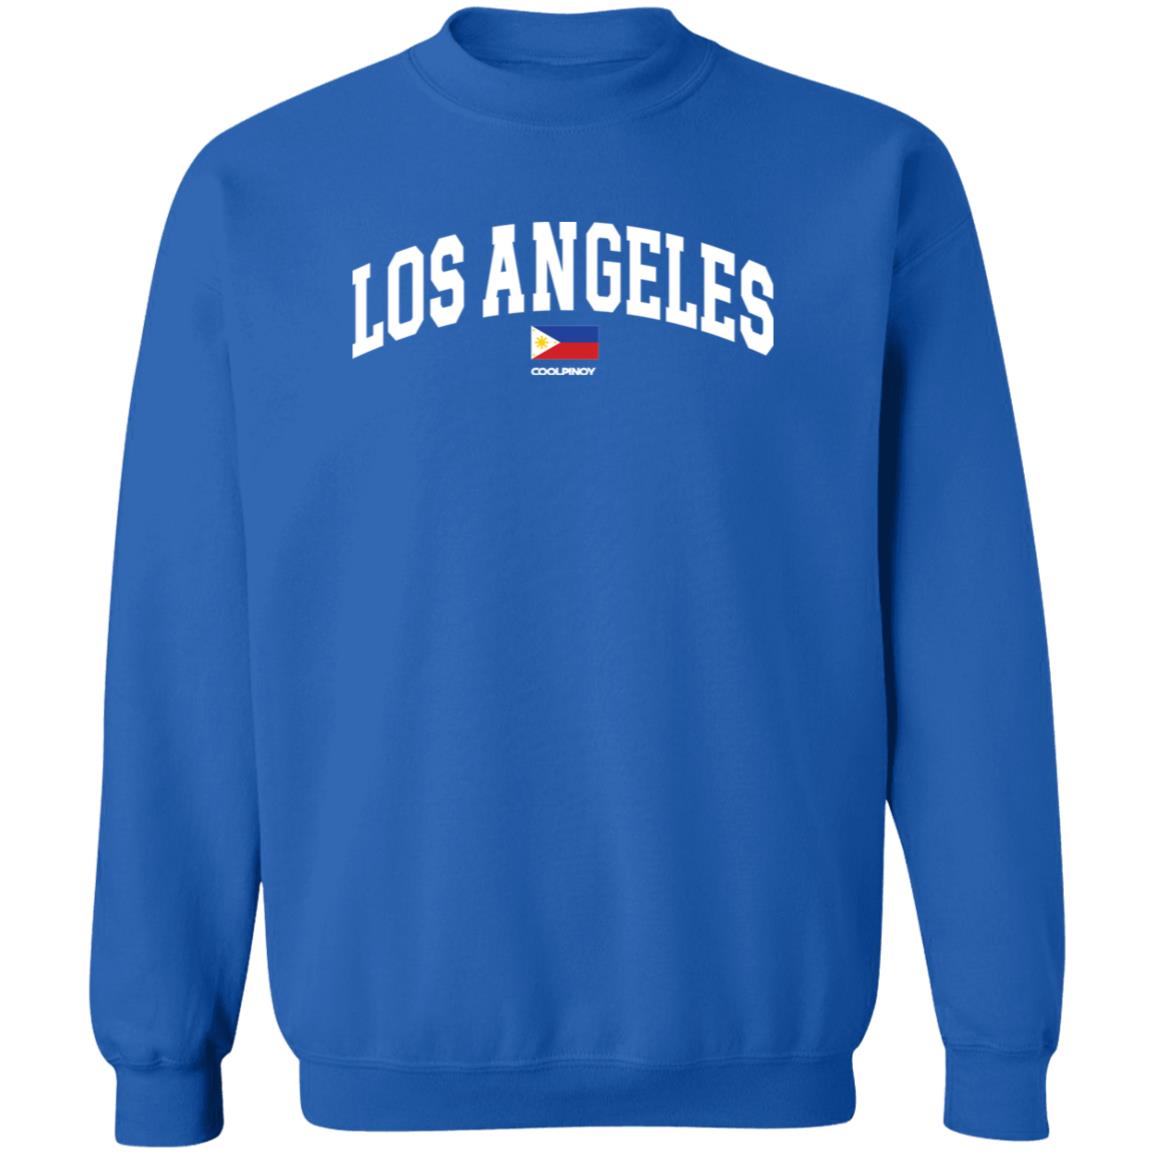 Los Angeles CP Unisex Crewneck Pullover Sweatshirt